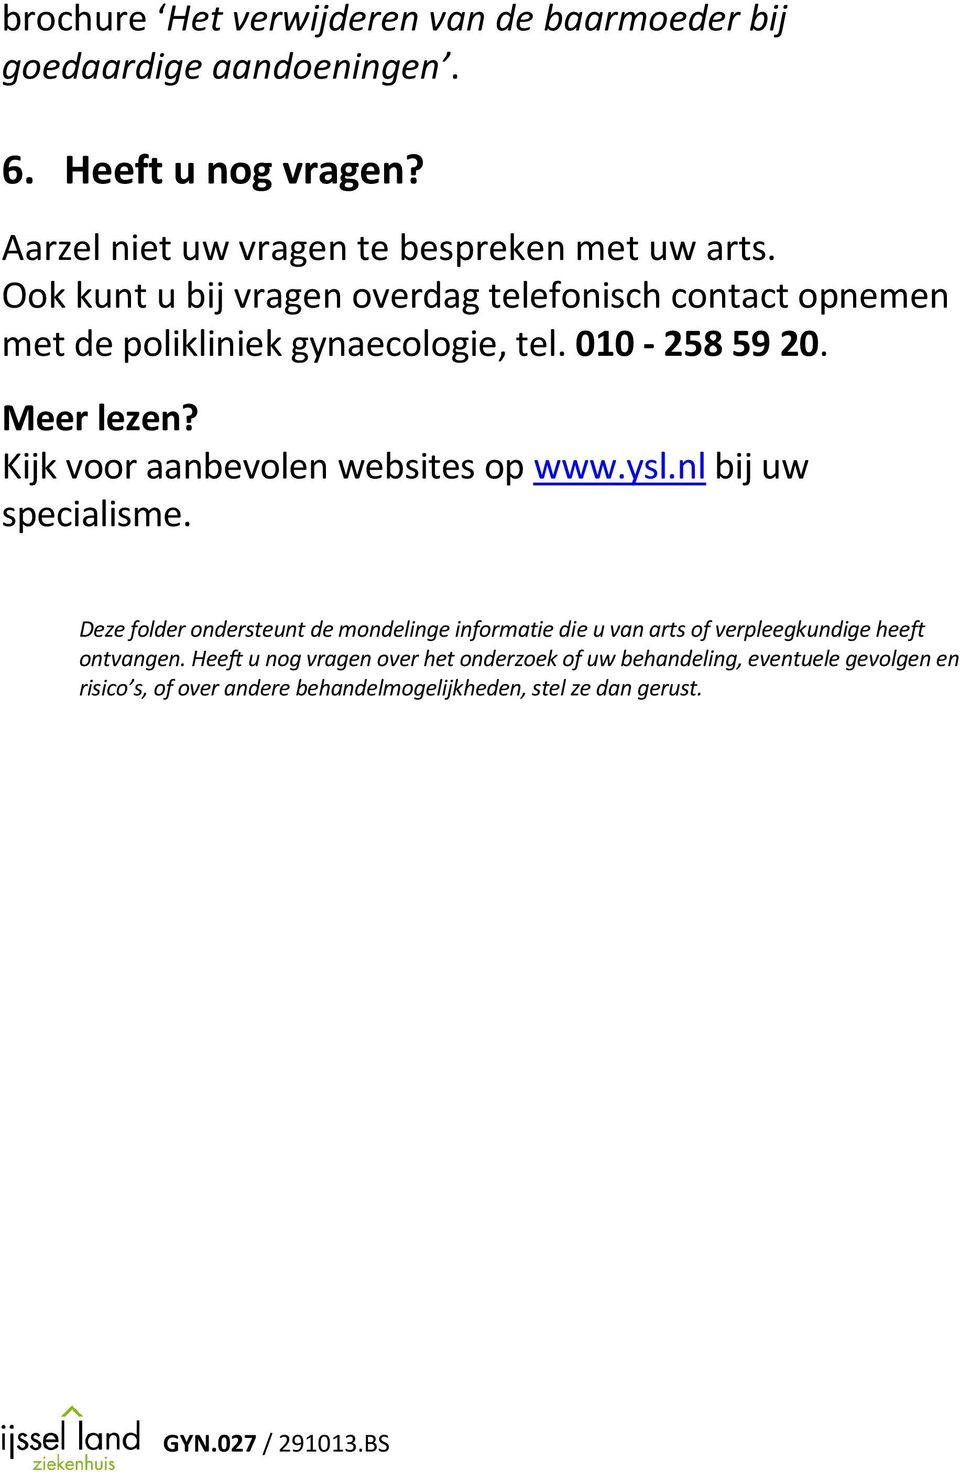 Kijk voor aanbevolen websites op www.ysl.nl bij uw specialisme.